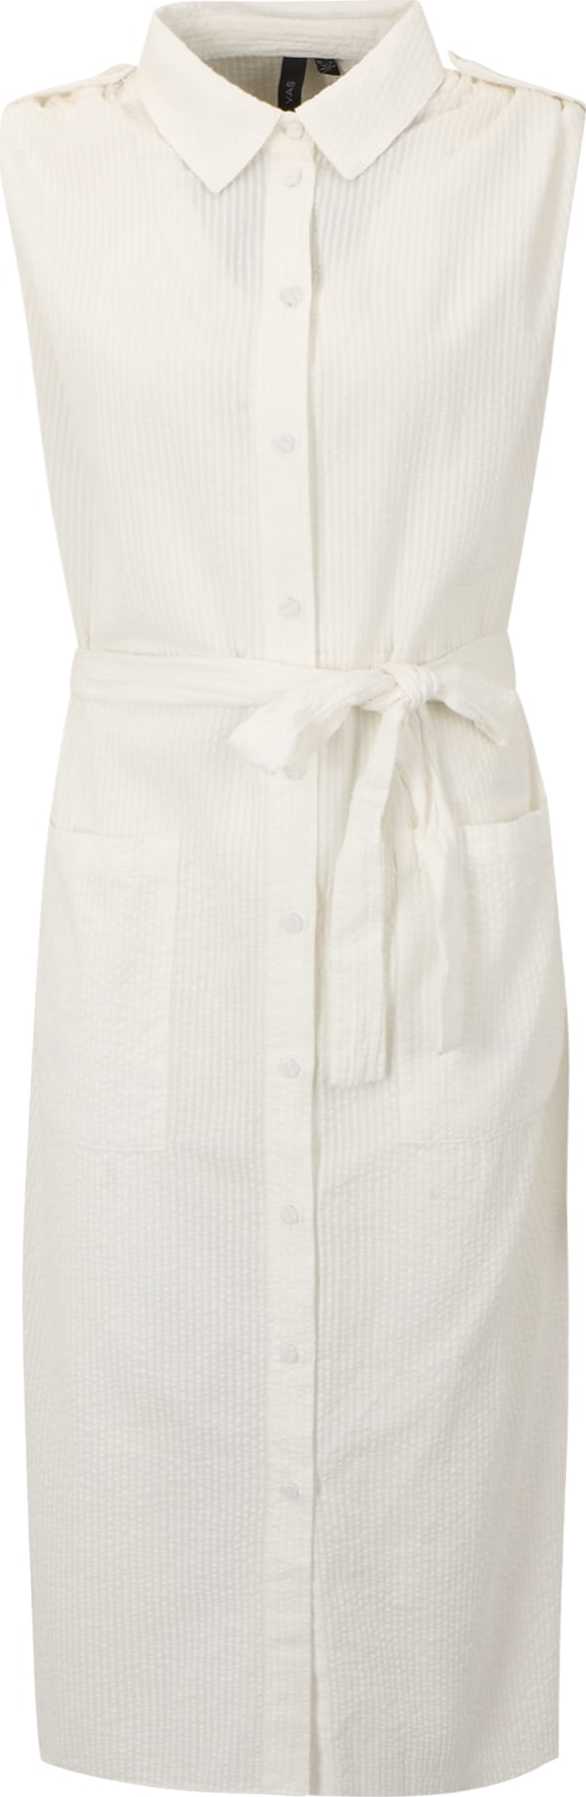 Y.A.S Tall Košilové šaty 'SWATIA' barva bílé vlny